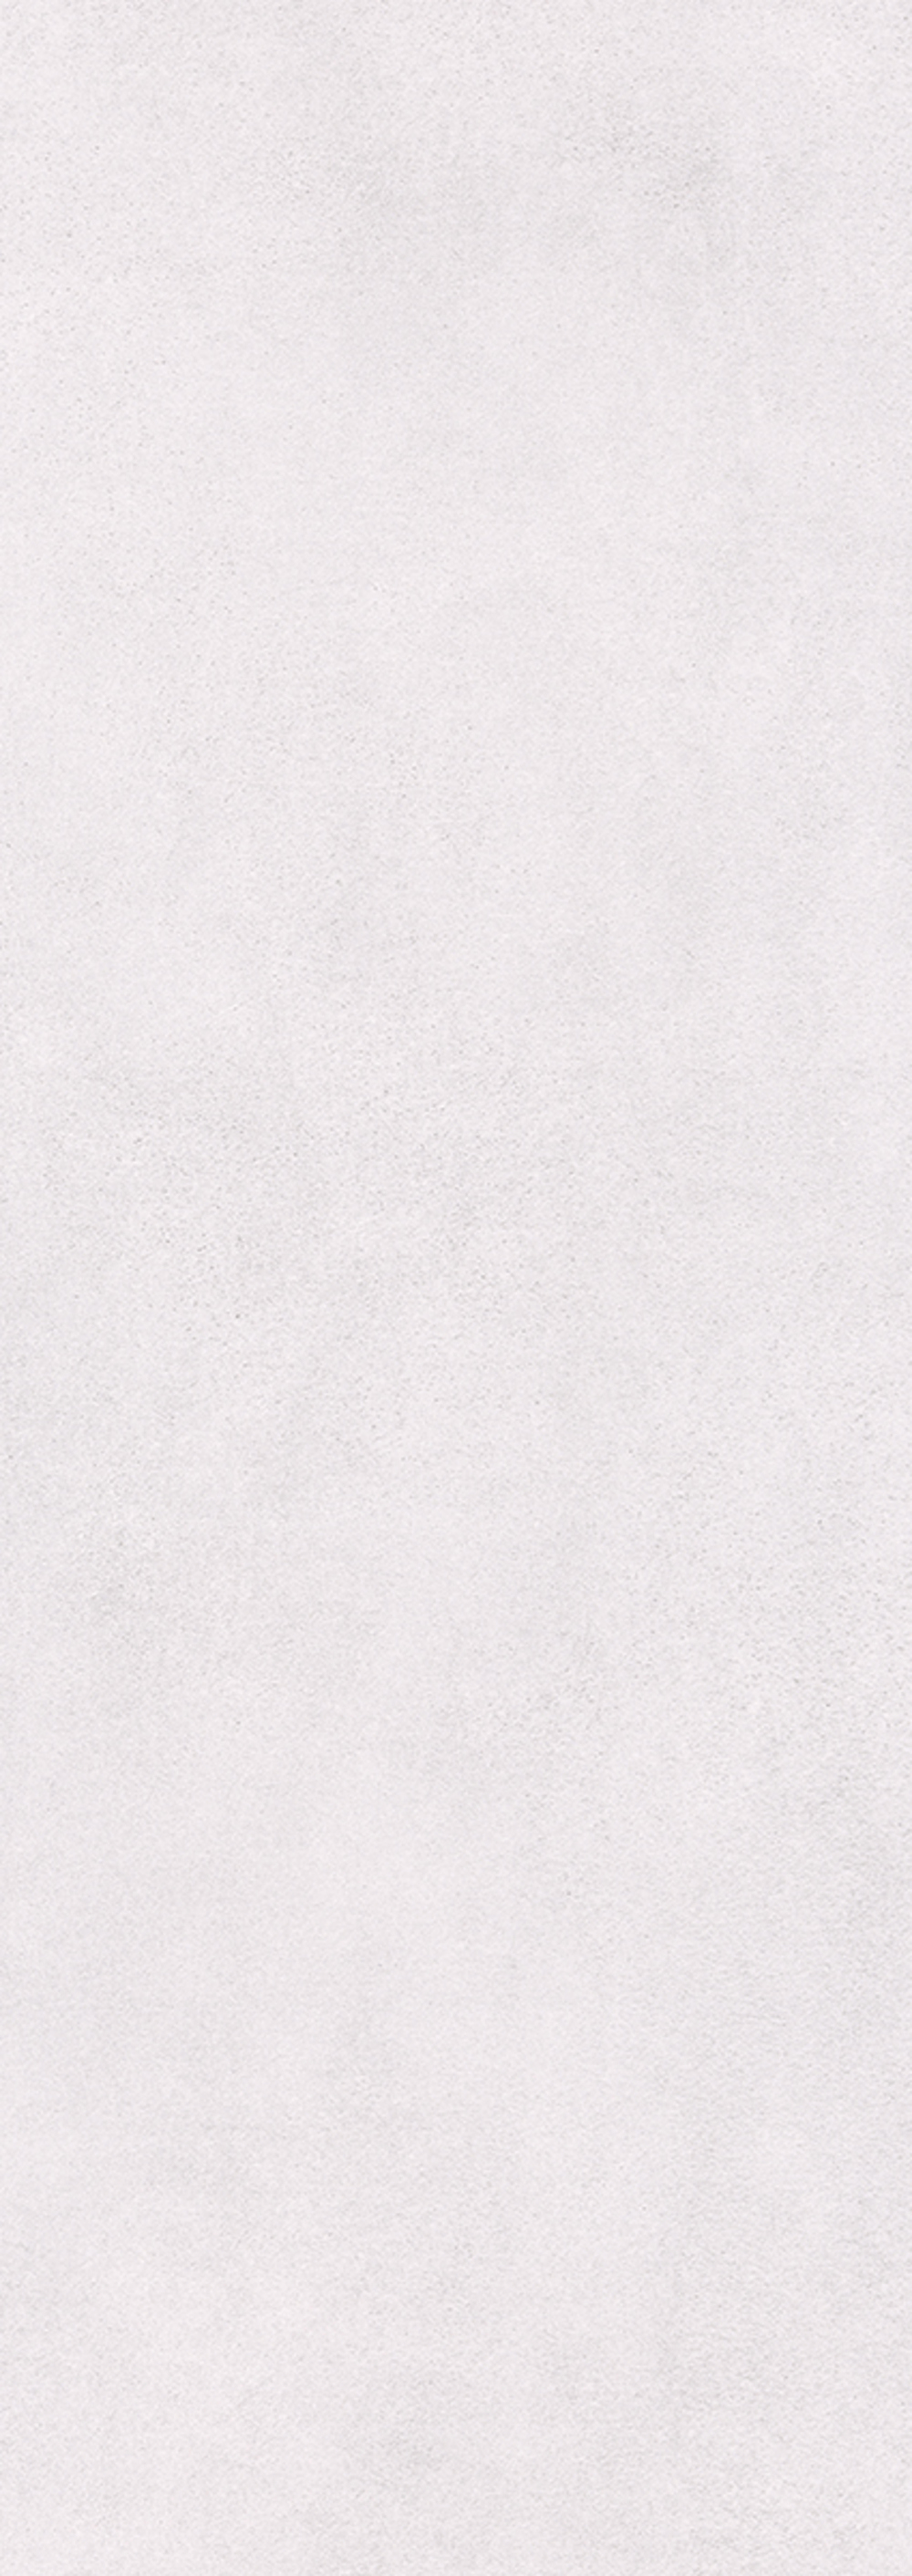 91090616 Керамическая плитка Alba Bianco 25.1x70.9см 1.25 м² цвет белый STLM-0478848 КЕРЛАЙФ